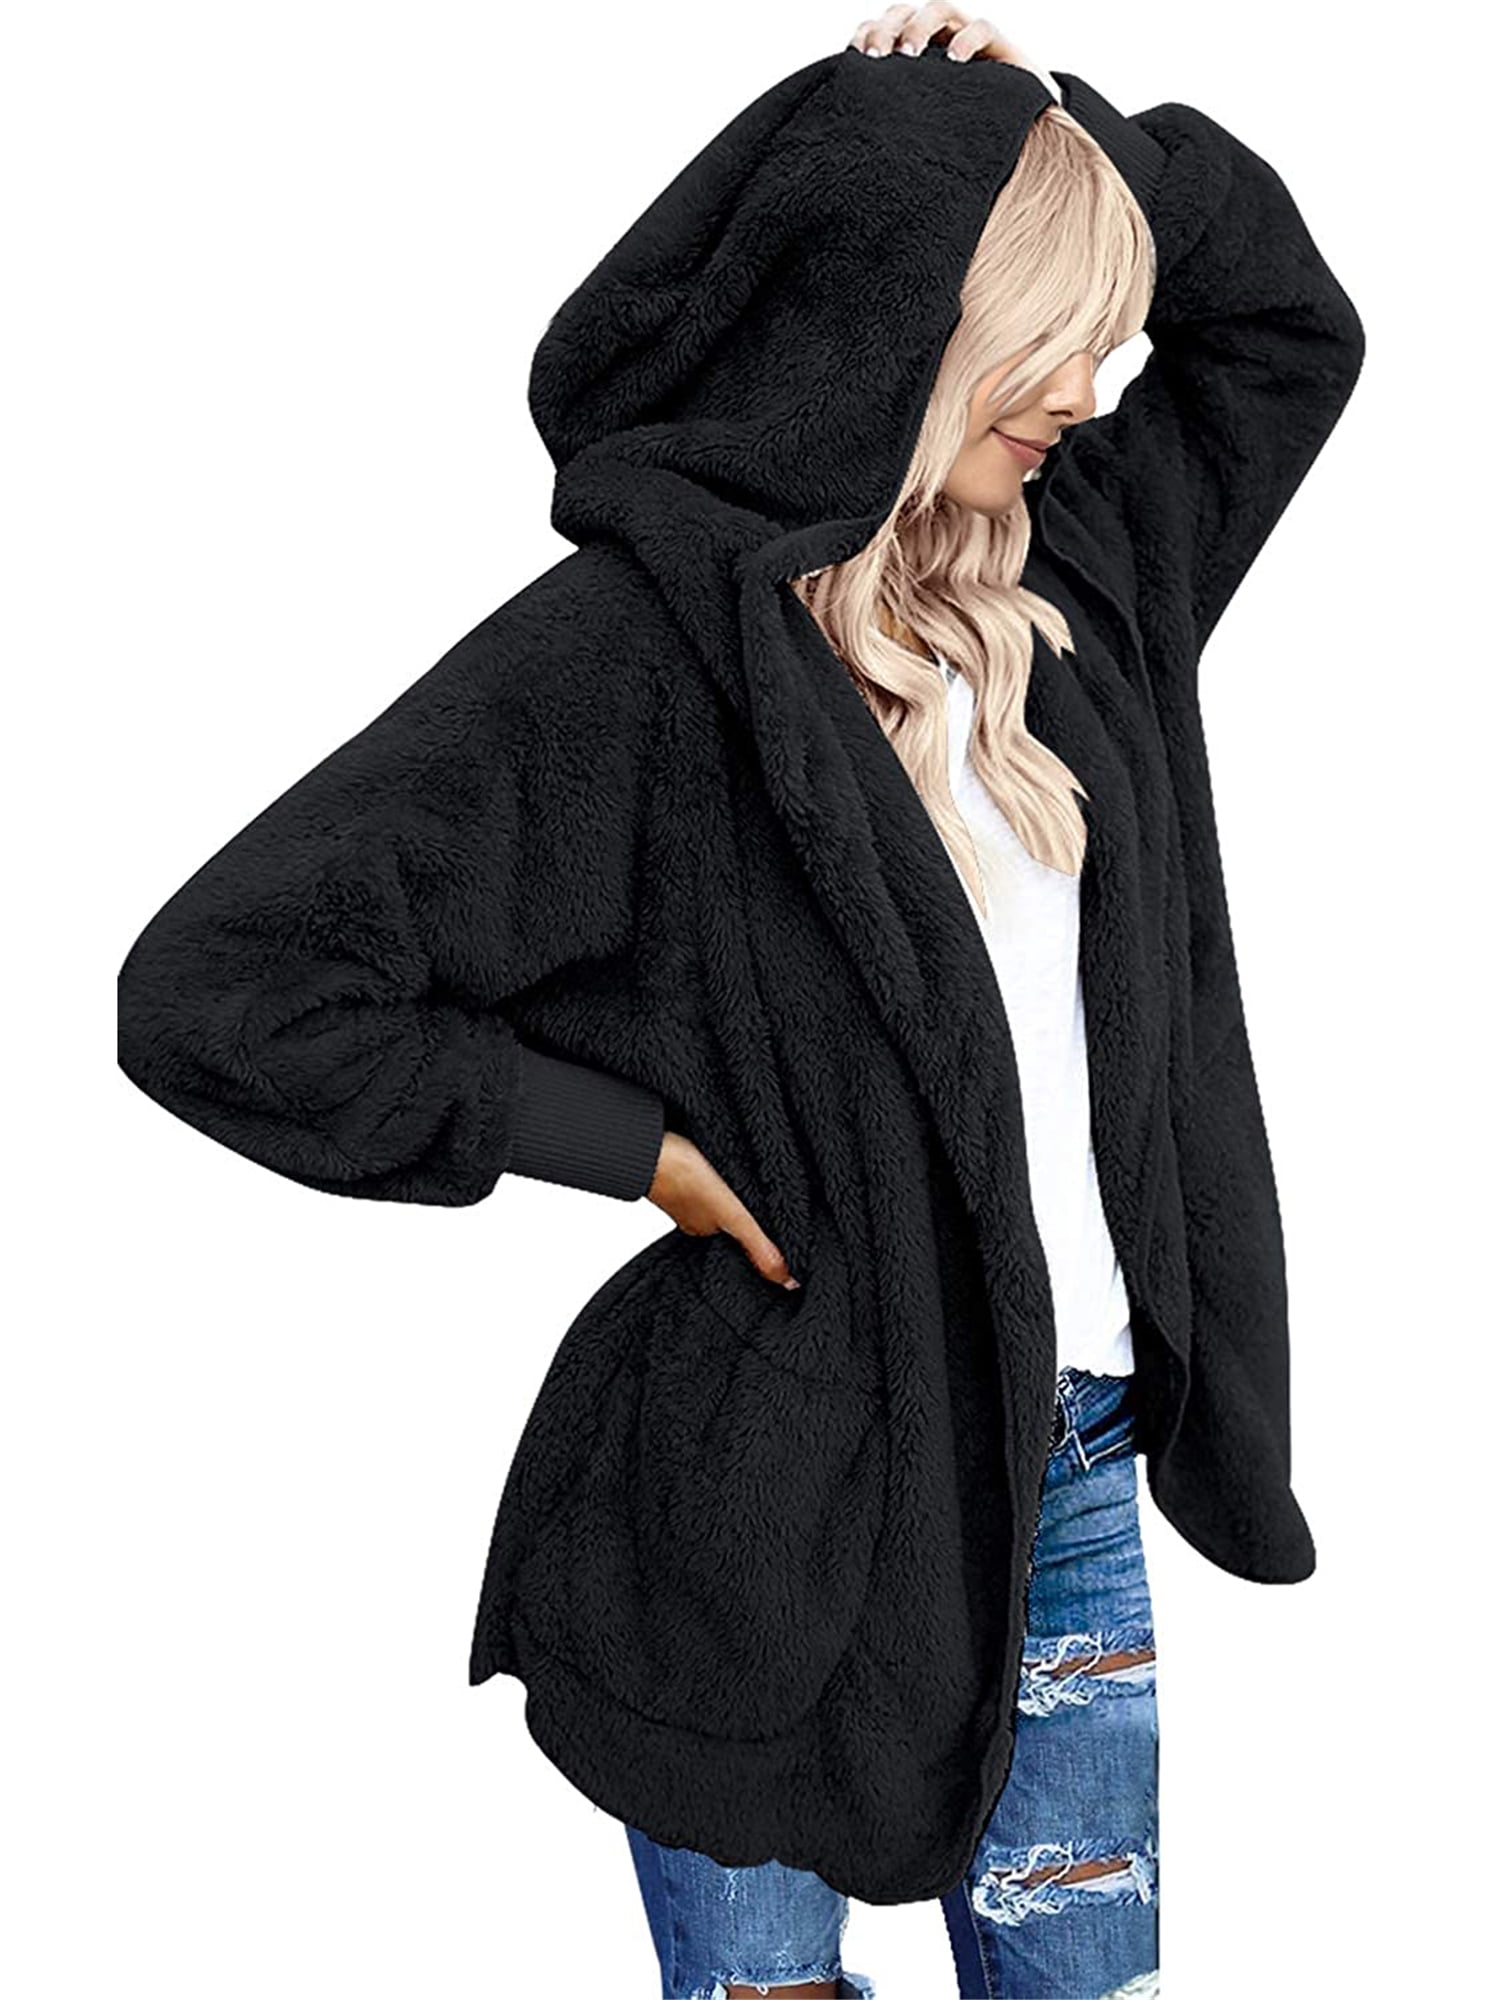 AKIMPE Womens Teddy Bear Jacket Fluffy Coat Zip up Cardigan Long Warm Plus Size Hooded Faux Fur Sherpa Fuzzy Outwear